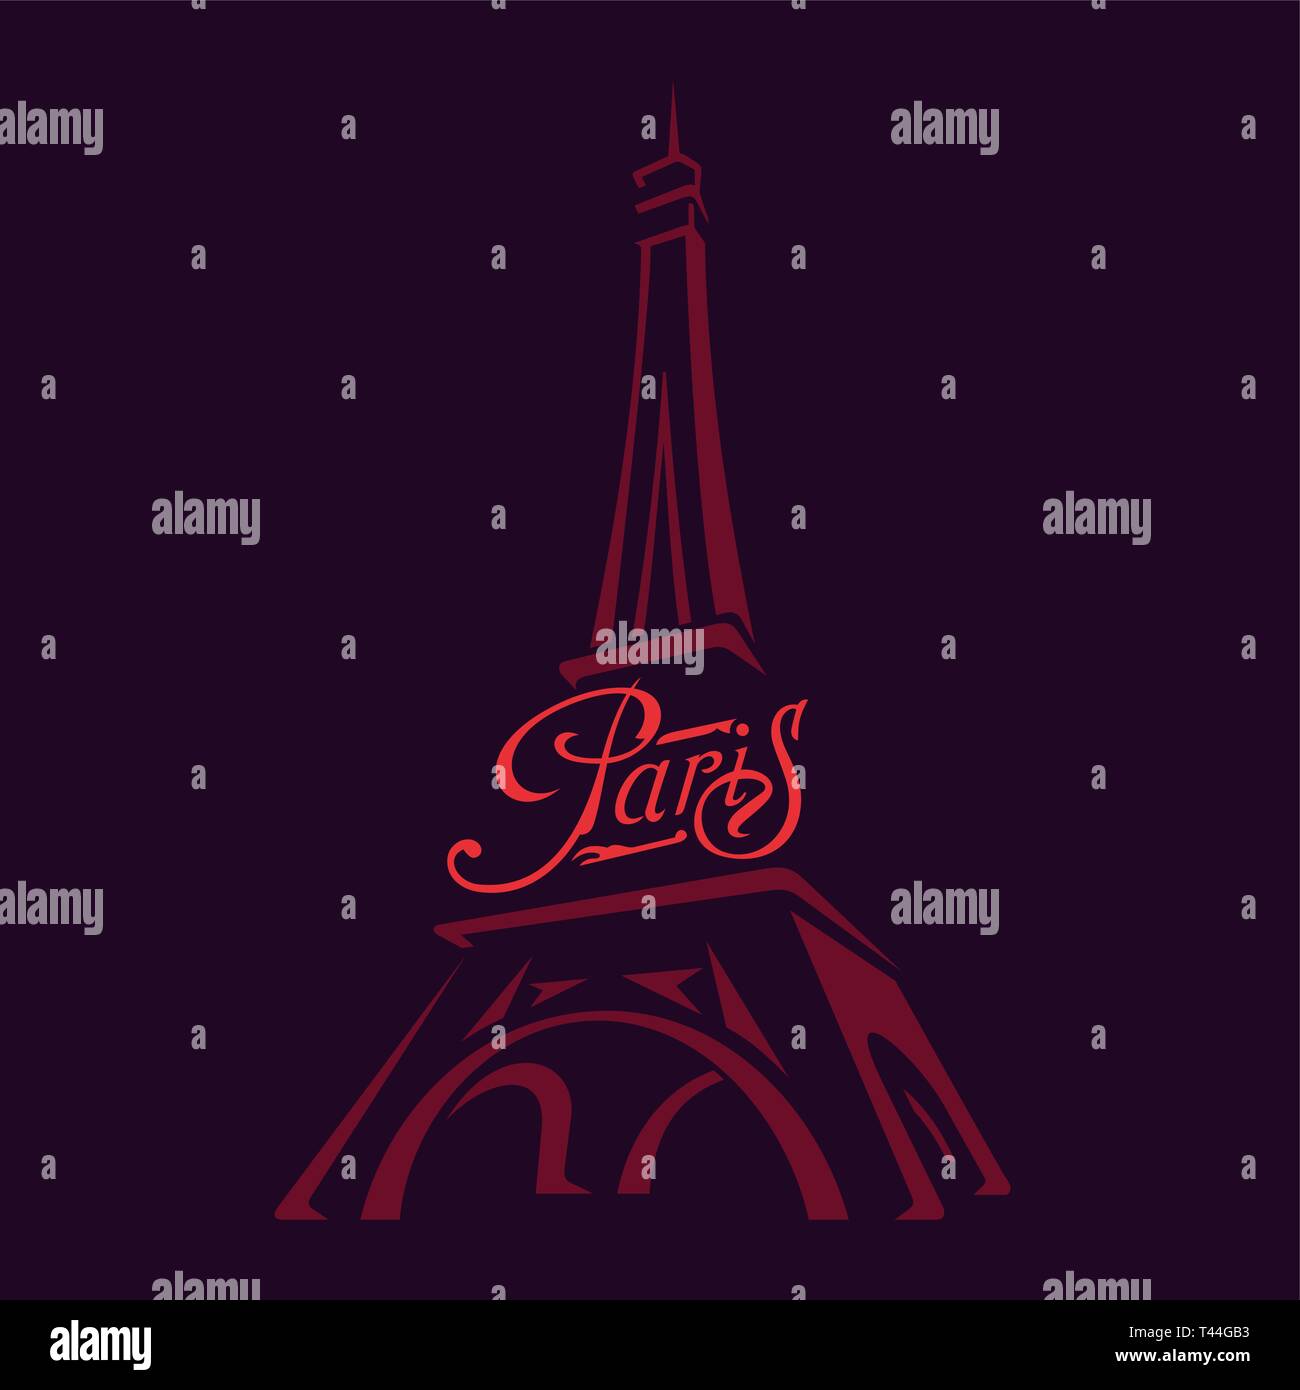 Immagine vettoriale della Torre Eiffel - il principale simbolo di Parigi. La scrittura calligrafica di Parigi. Illustrazione Vettoriale